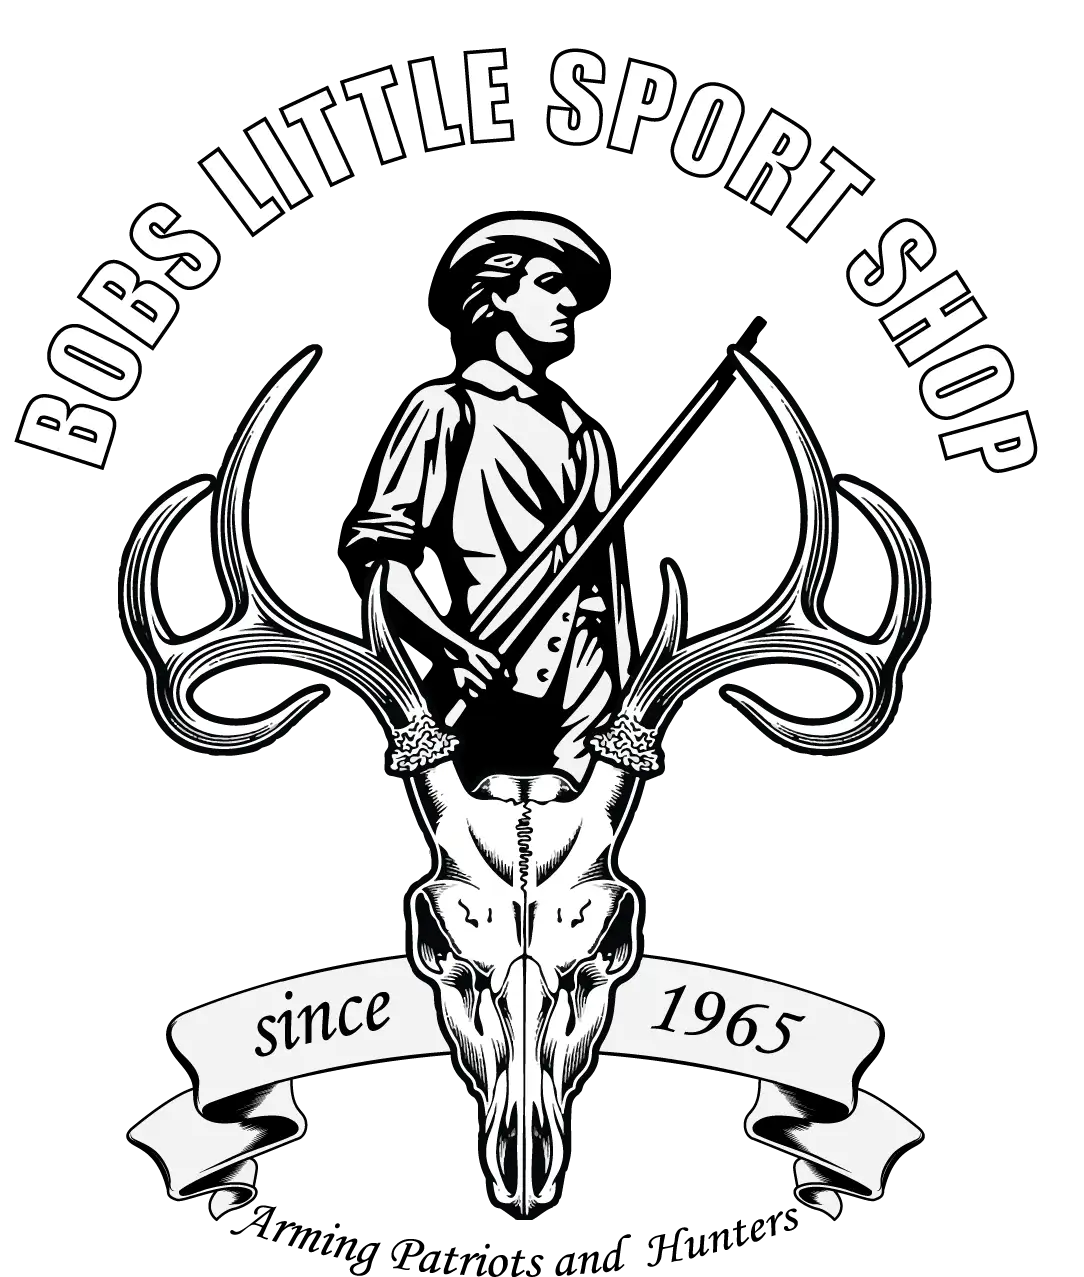 Bobs Little Sport Shop